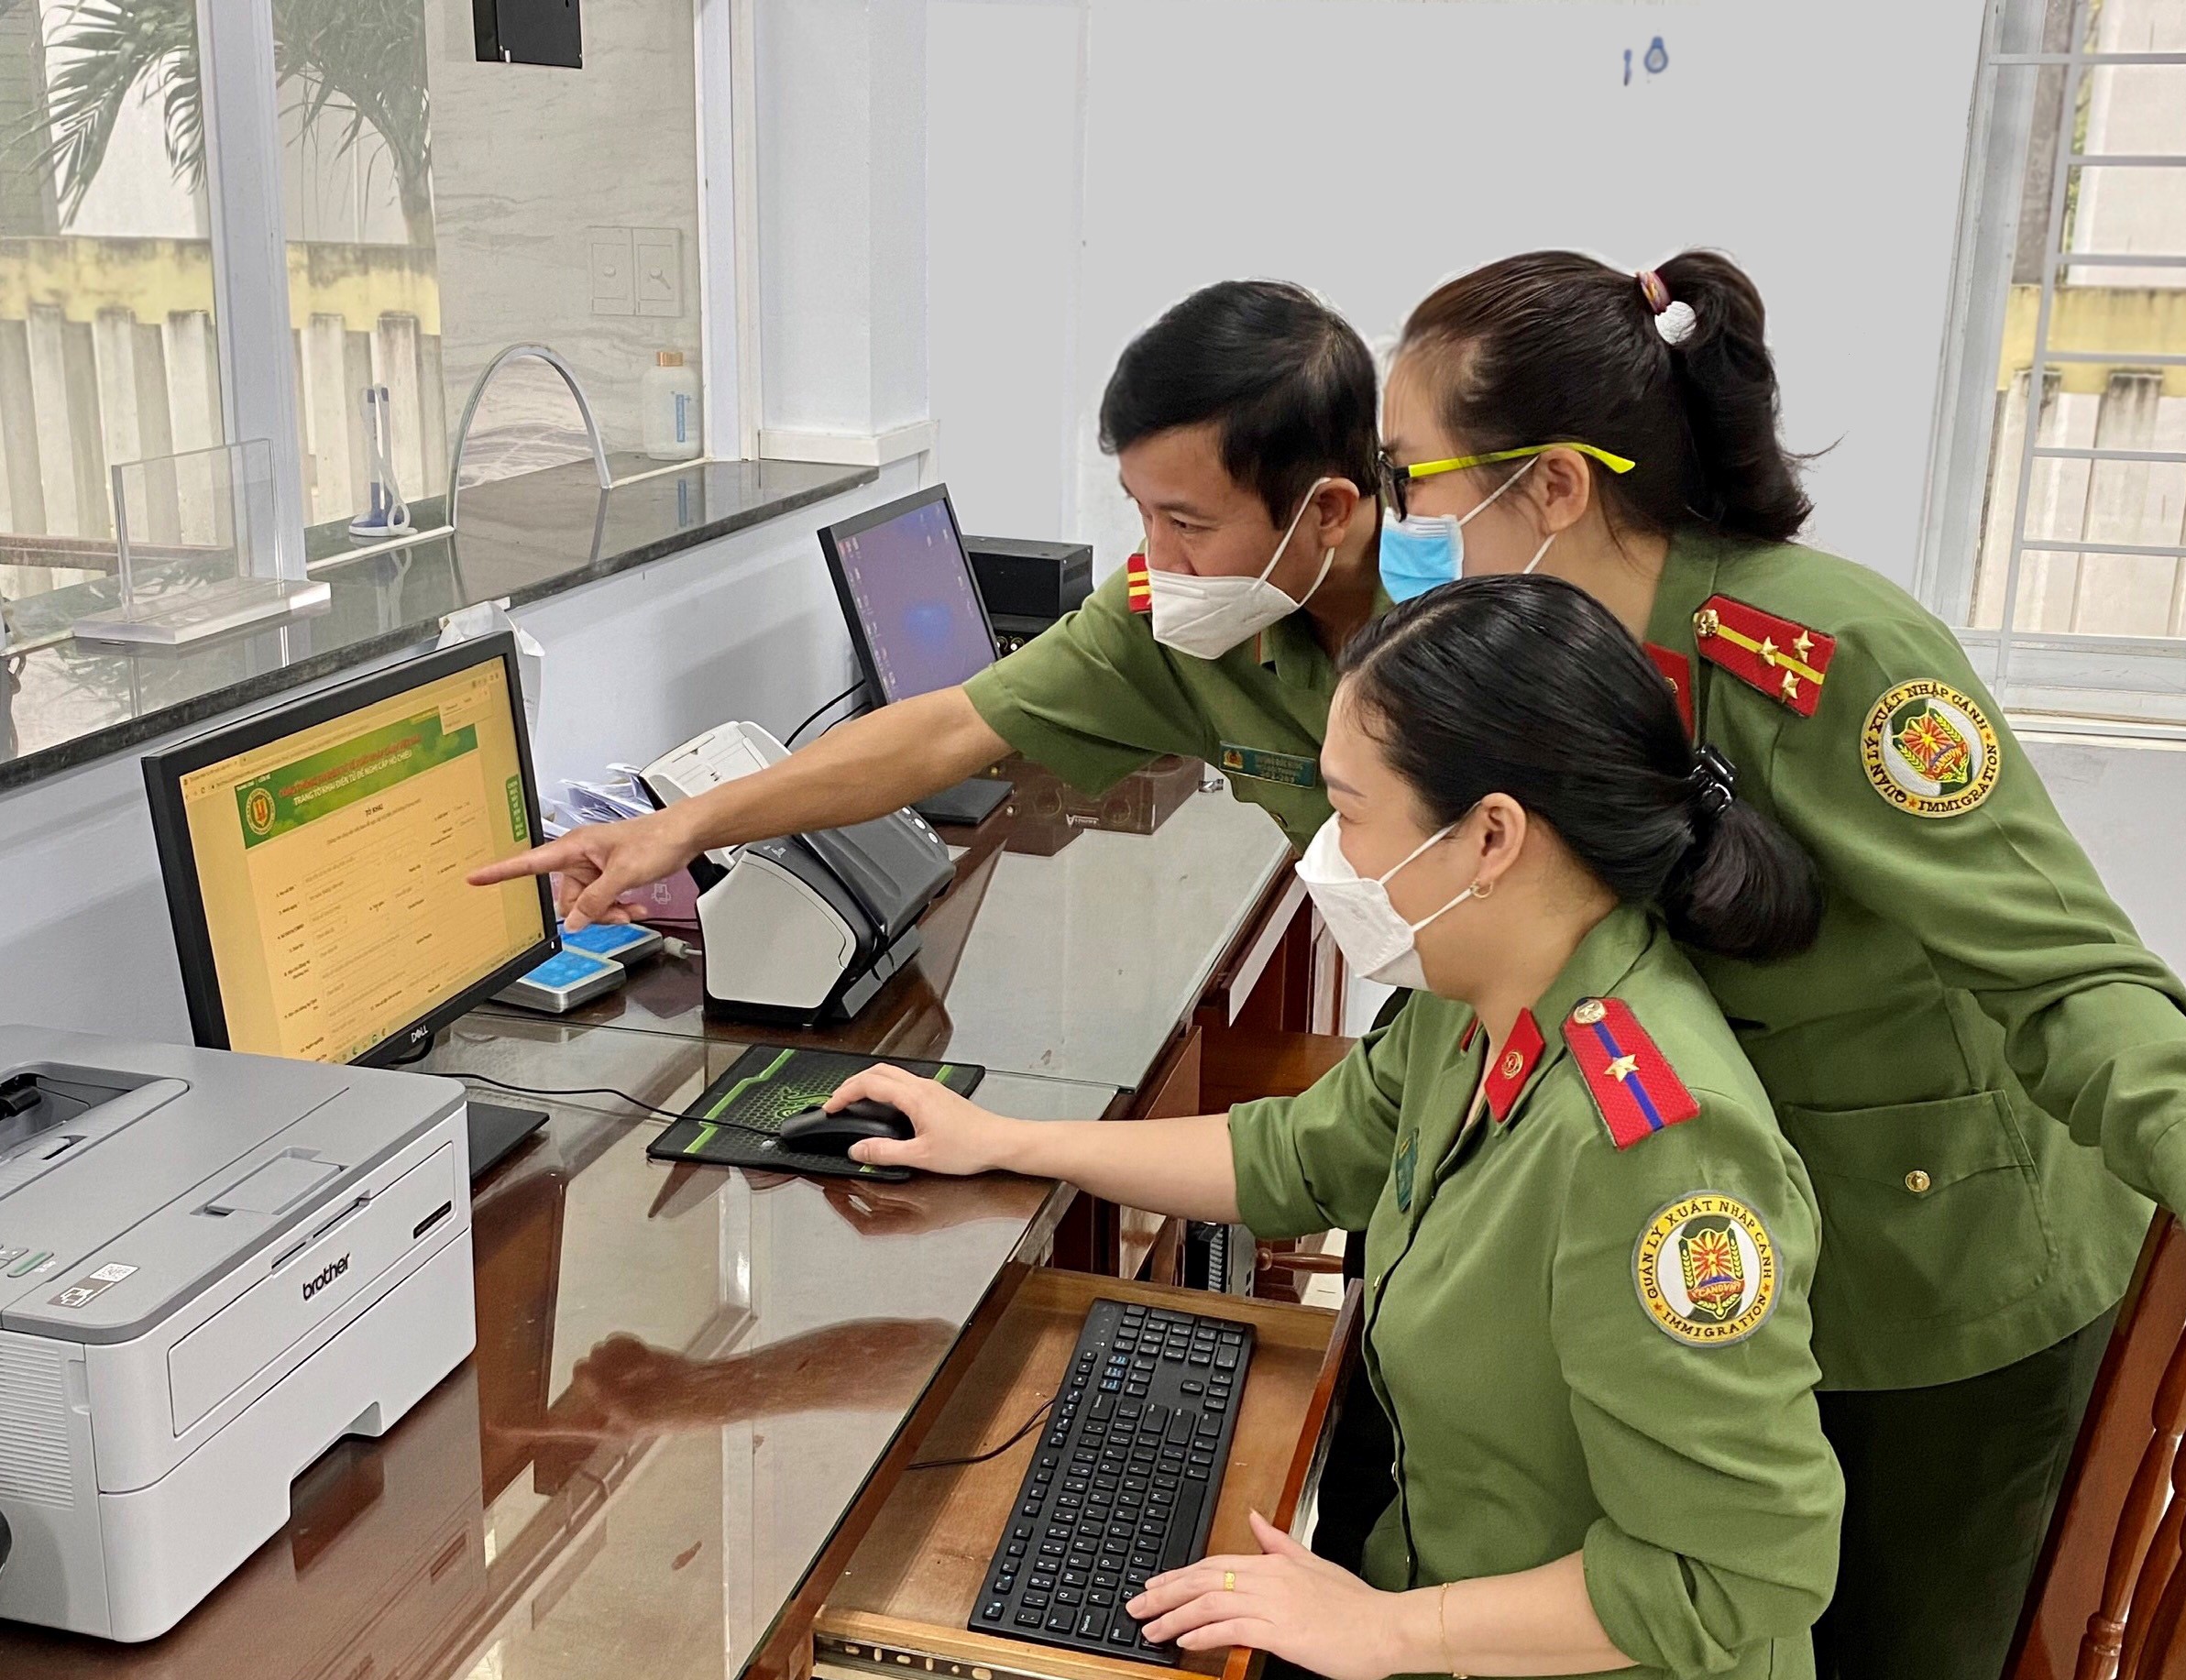 Triển khai hệ thống cấp hộ chiếu phổ thông có gắn chíp điện tử trong nước tại Công an tỉnh Quảng Ngãi